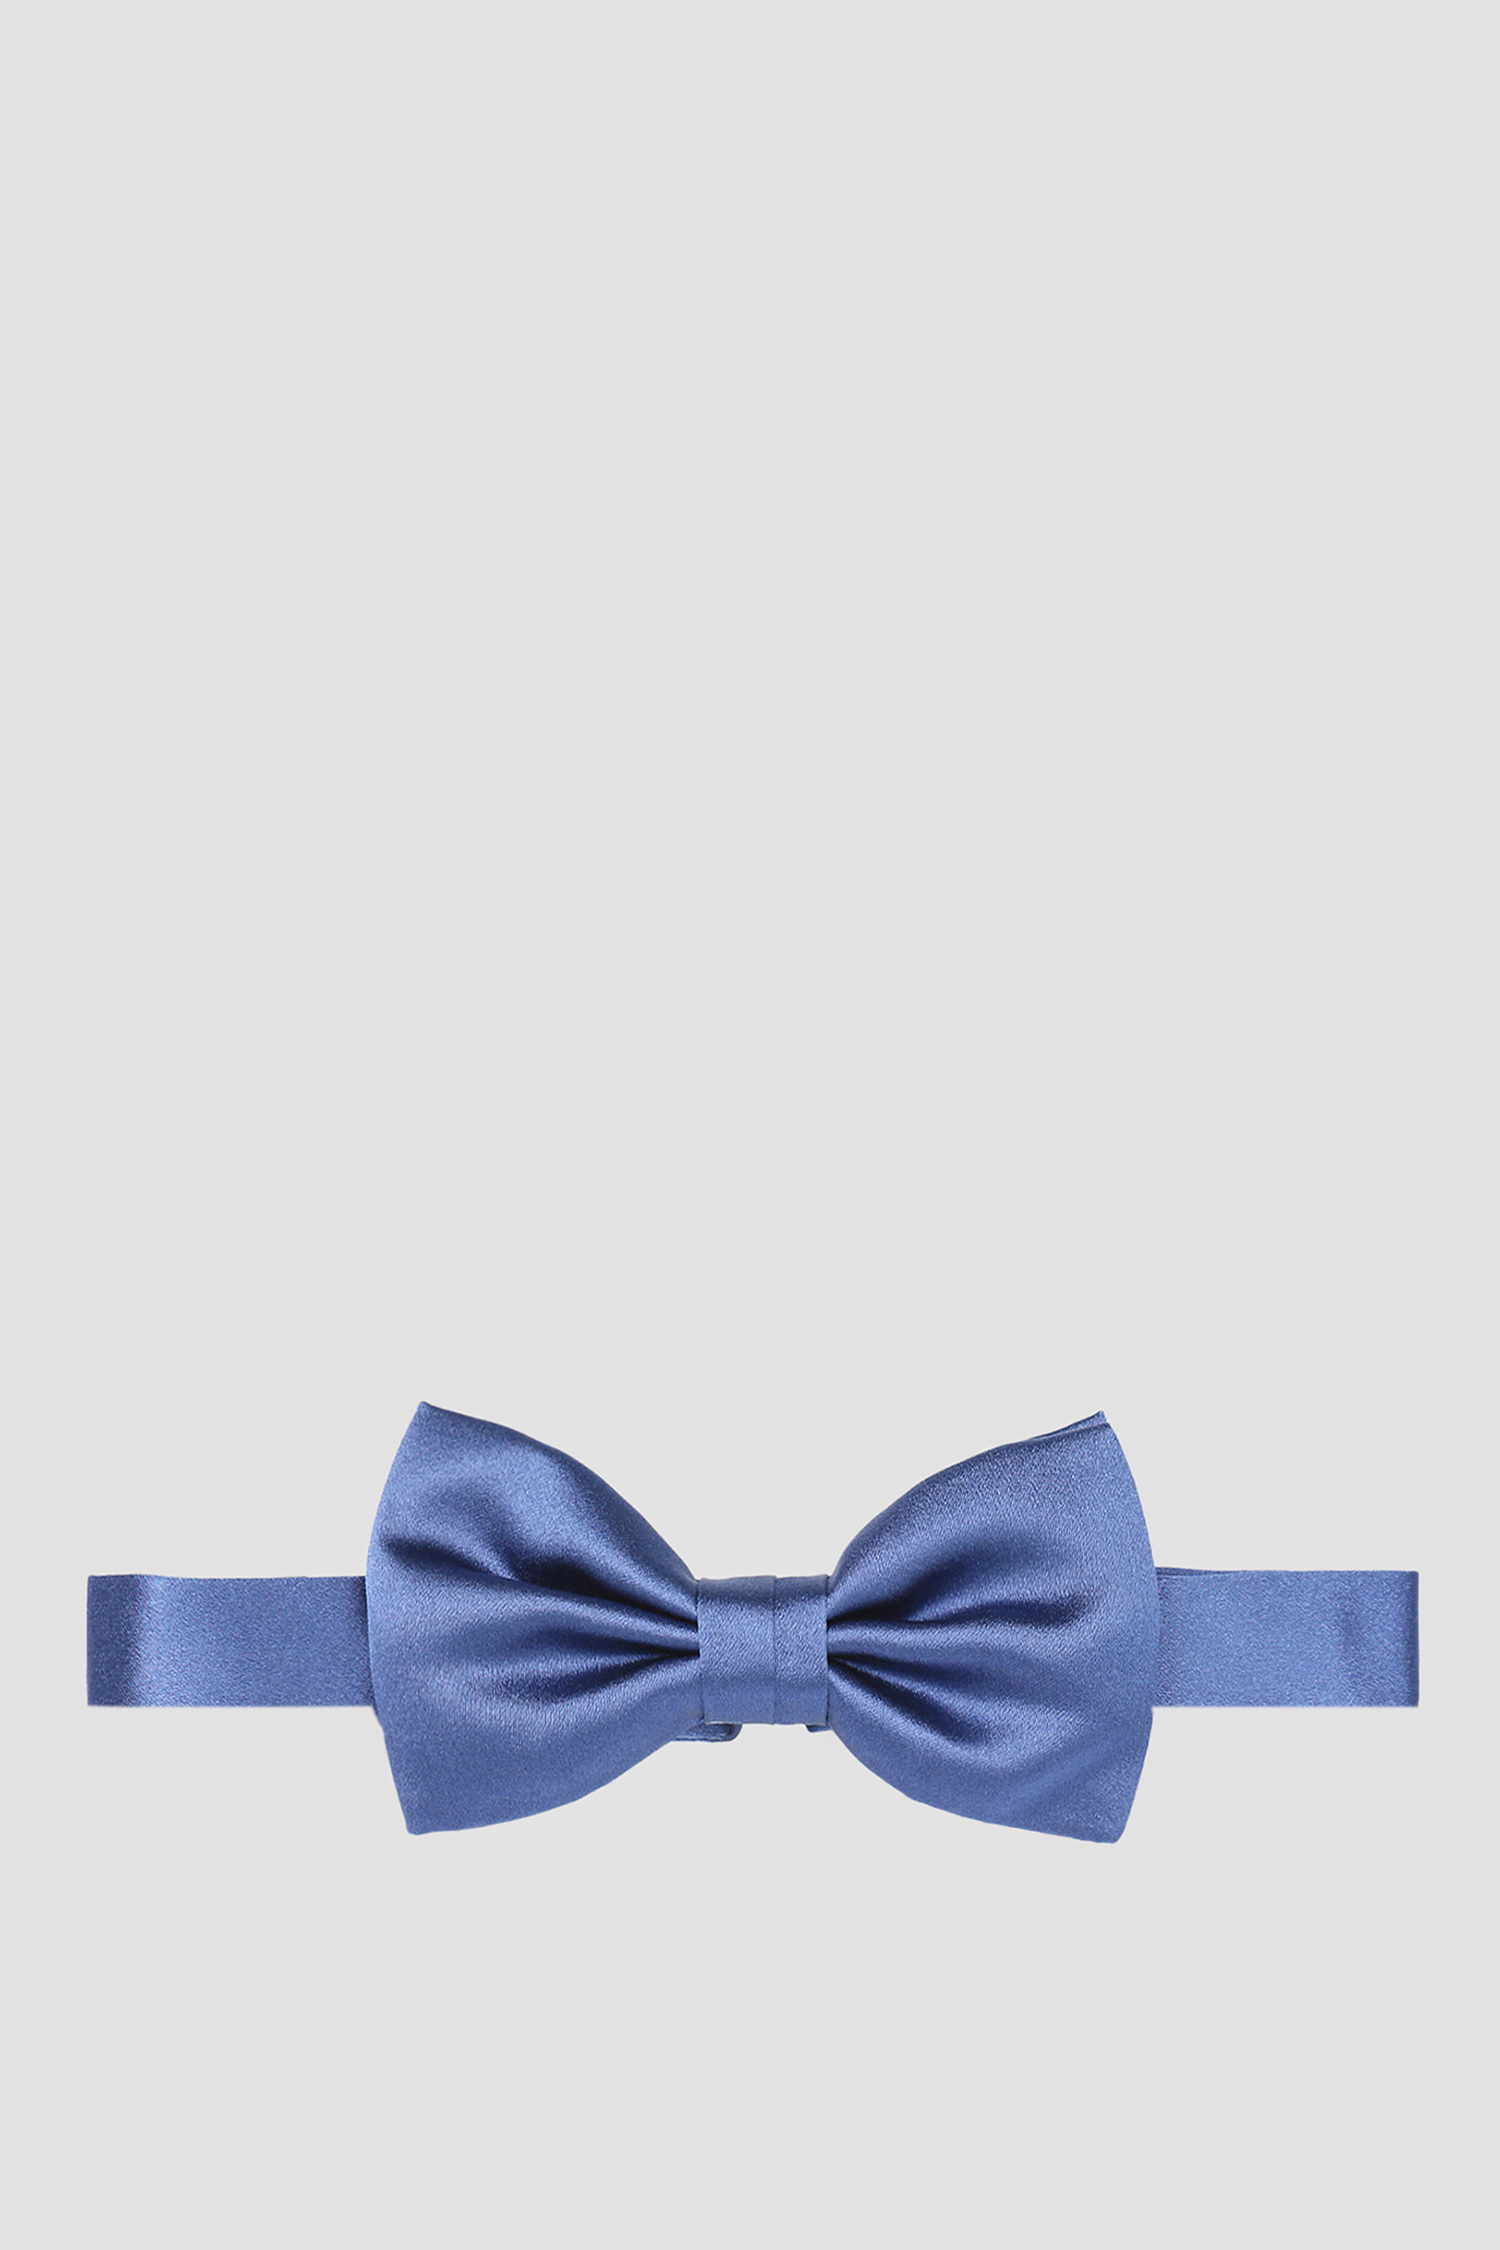 Мужская синяя шелковая бабочка Karl Lagerfeld 582198.805200;640